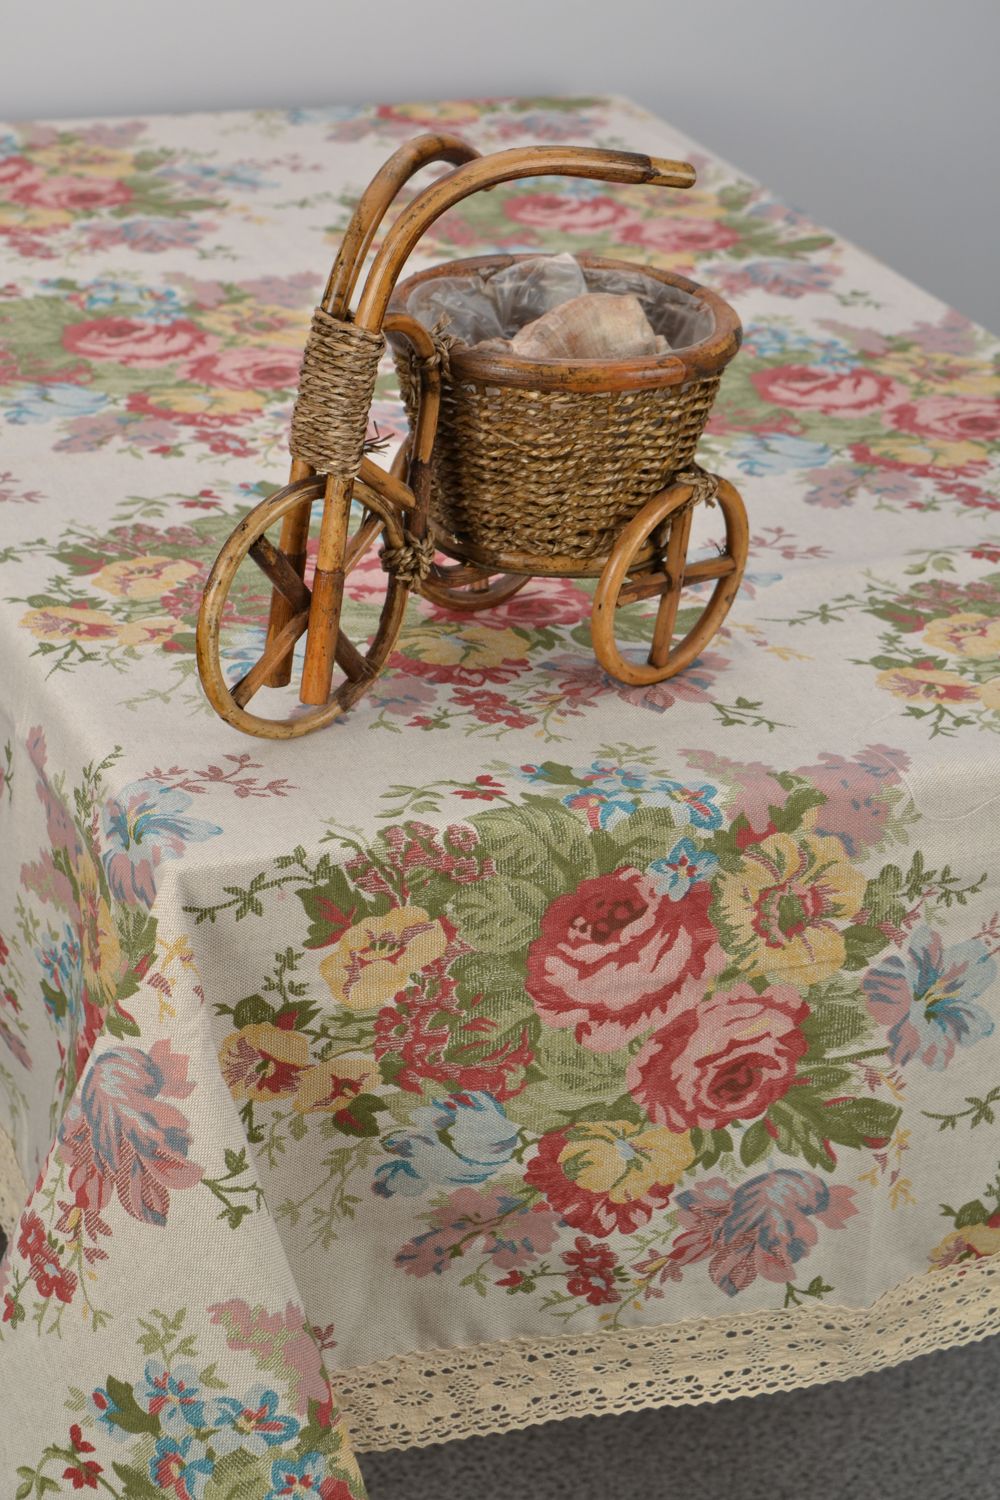 Скатерть ручной работы из хлопка и полиамида в цветочный принт и с кружевом фото 1